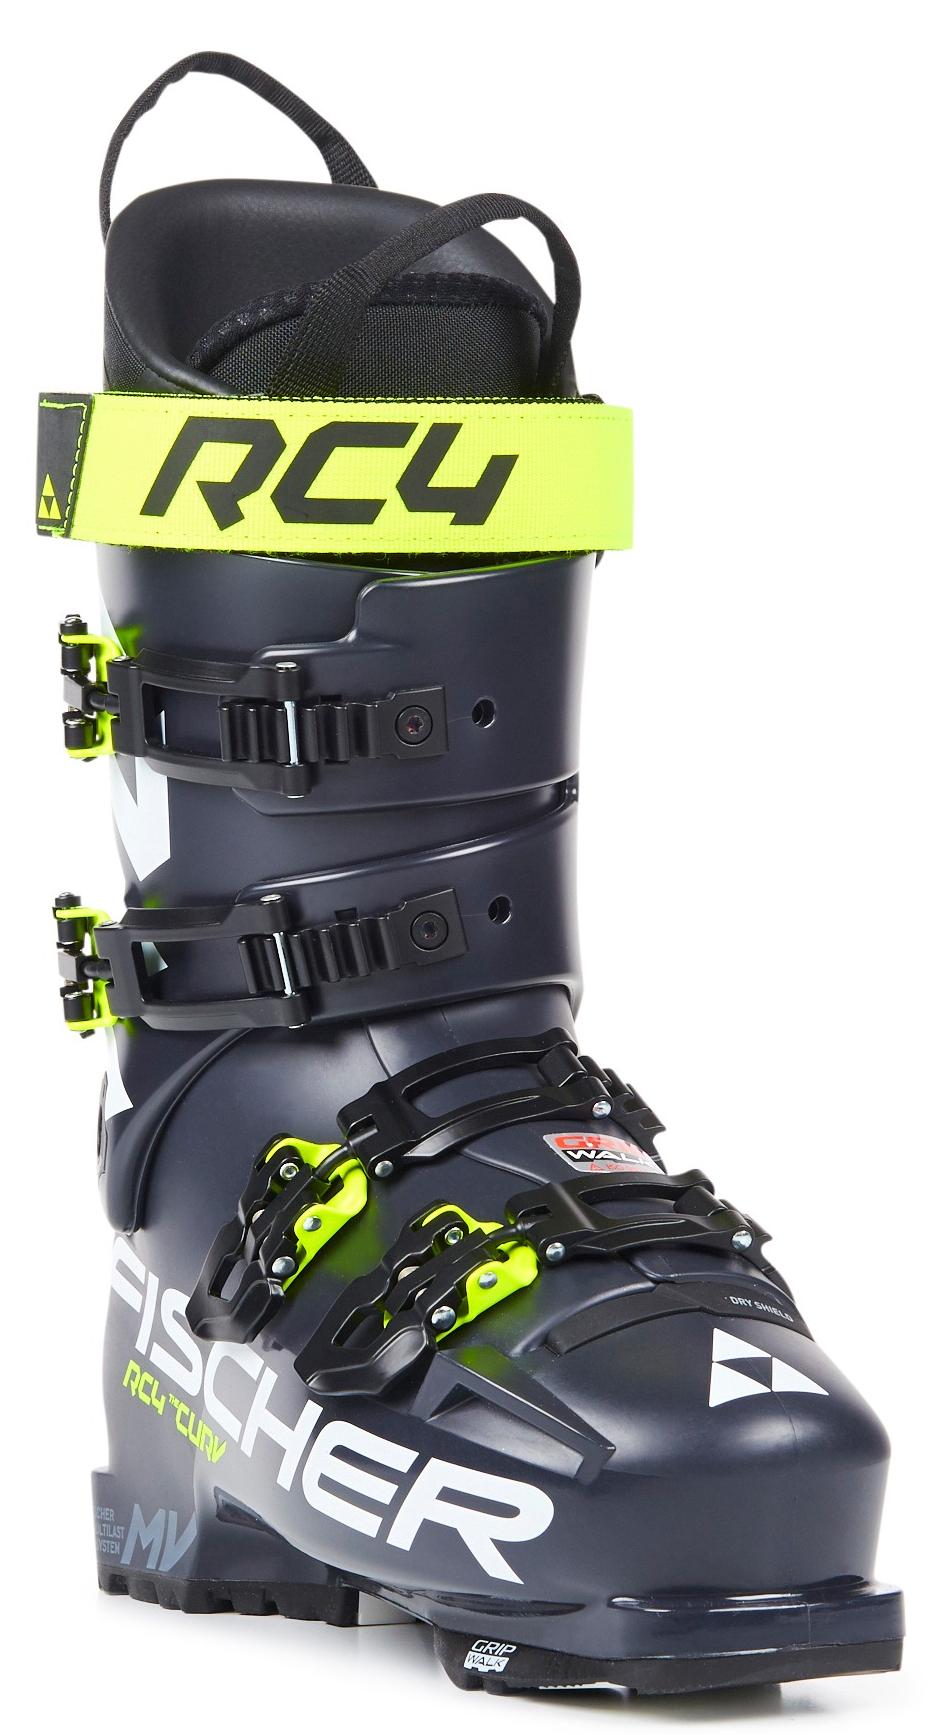 Горнолыжные ботинки Fischer Rc4 The Curv 110 Vacuum Walk 2021, darkgrey/darkgrey, 27.5